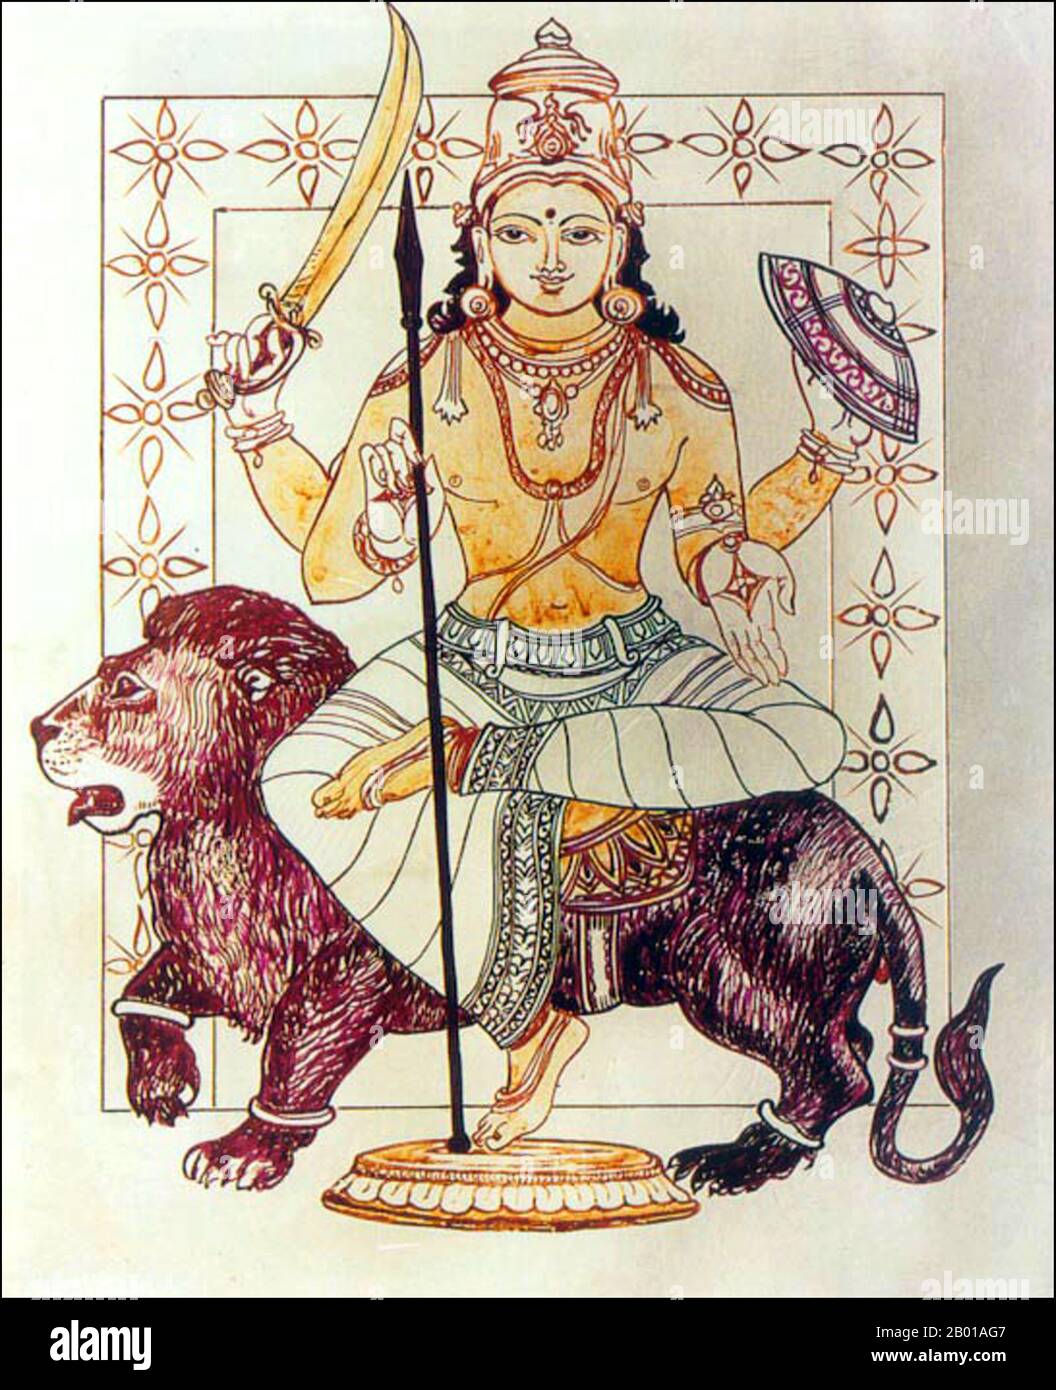 India: Una rappresentazione indiana di Rahu, Snake Demon e cavatore di eclissi solari e lunari. Nella mitologia indù, Rahu è un serpente che inghiottisce il sole o la luna causando eclissi. È raffigurato nell'arte come un drago senza corpo che guida un carro disegnato da otto cavalli neri. Rahu è uno dei navagrahas (nove pianeti) in astrologia vedica. Il Rahu kala (ora del giorno sotto l'influenza di Rahu) è considerato inopportuno. Foto Stock